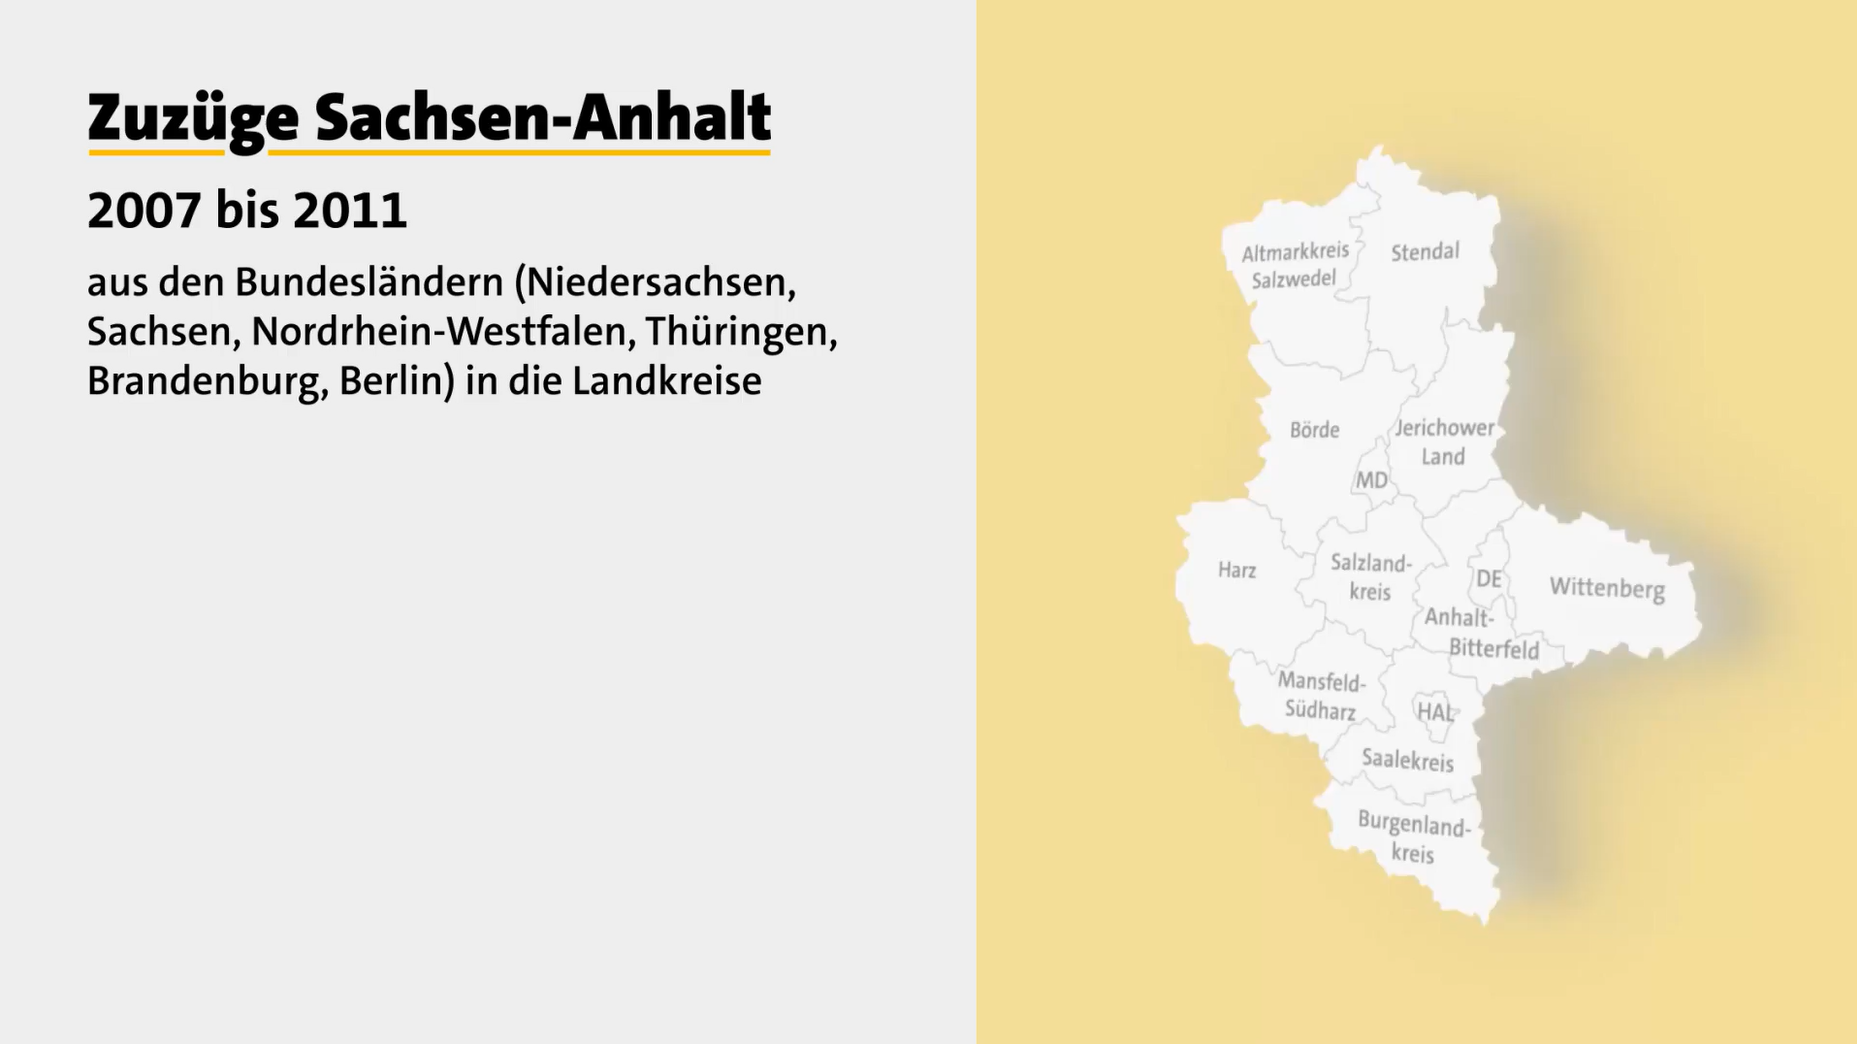 Startbild des Videos zu Zuzügen Sachsen-Anhalt 2007 bis 2011